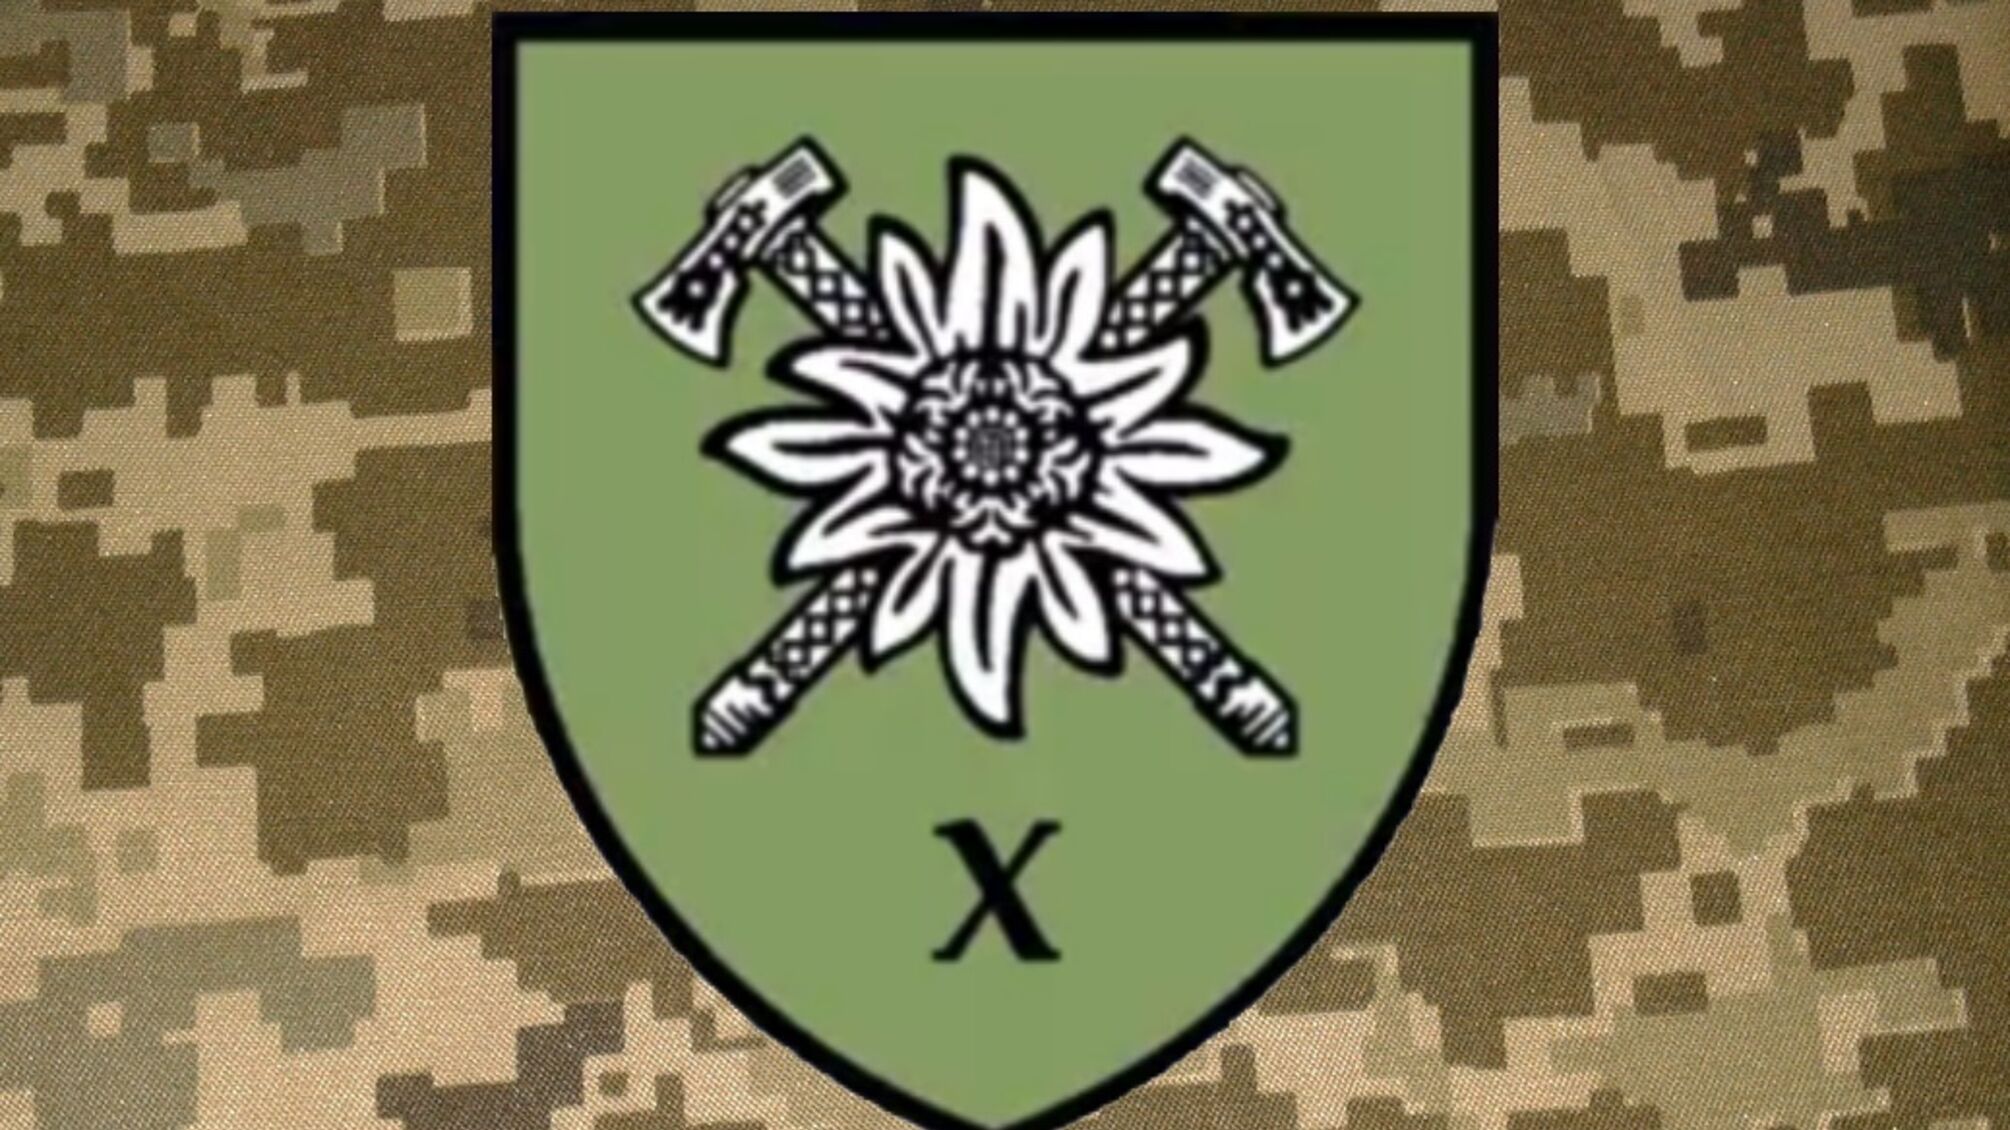 Едельвейс та схрещені гуцульські сокири зображені на емблемі 10-ї бригади